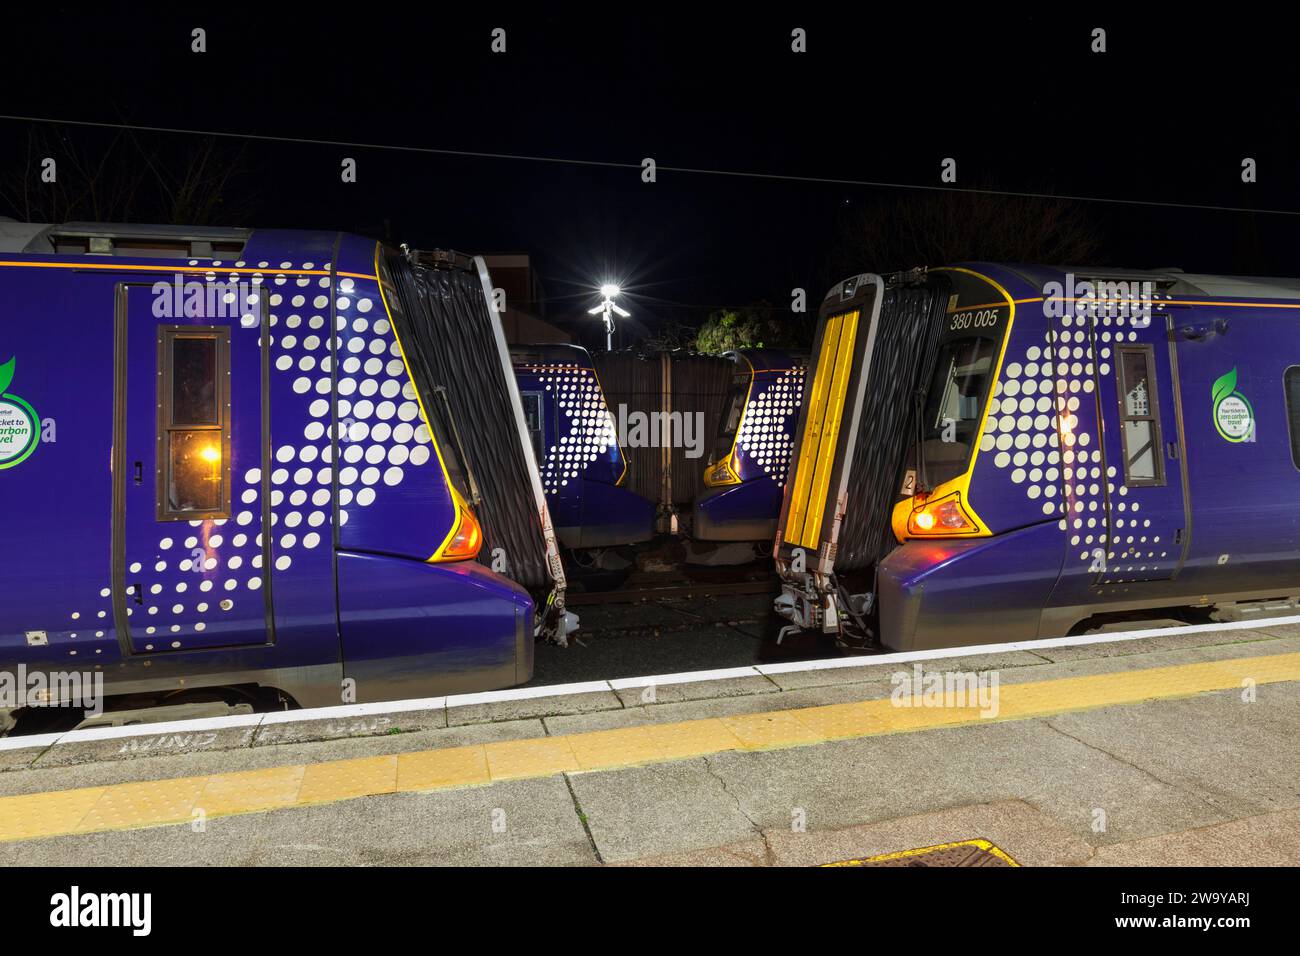 Elektrische Triebzüge der Baureihe 380 von ScotRail Siemens am Bahnhof Largs, Ayrshire, Schottland, Großbritannien Stockfoto